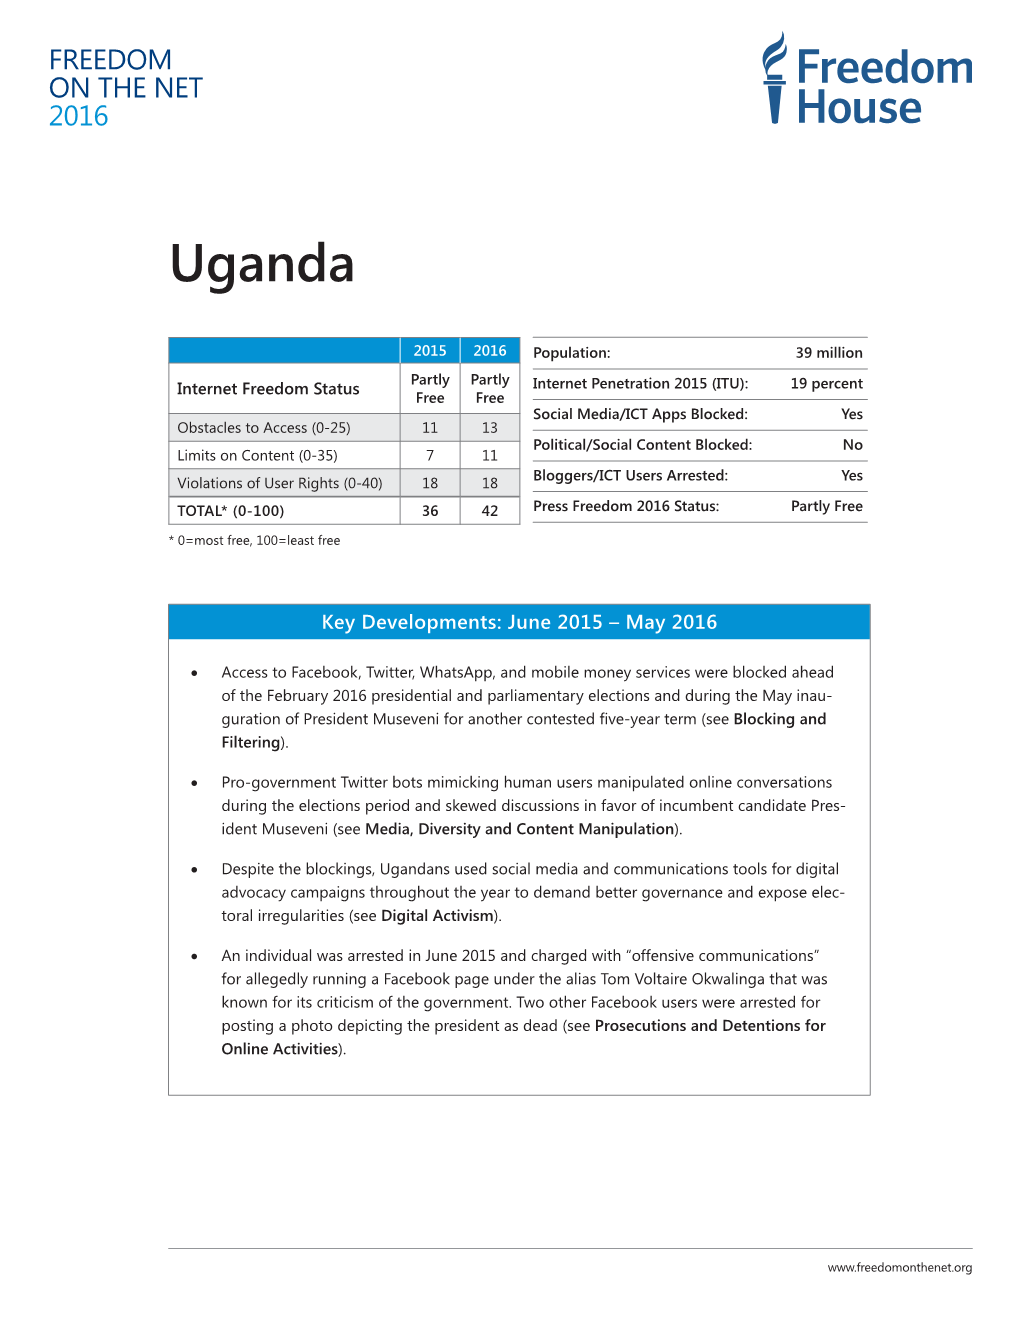 Uganda: Freedom on the Net 2016